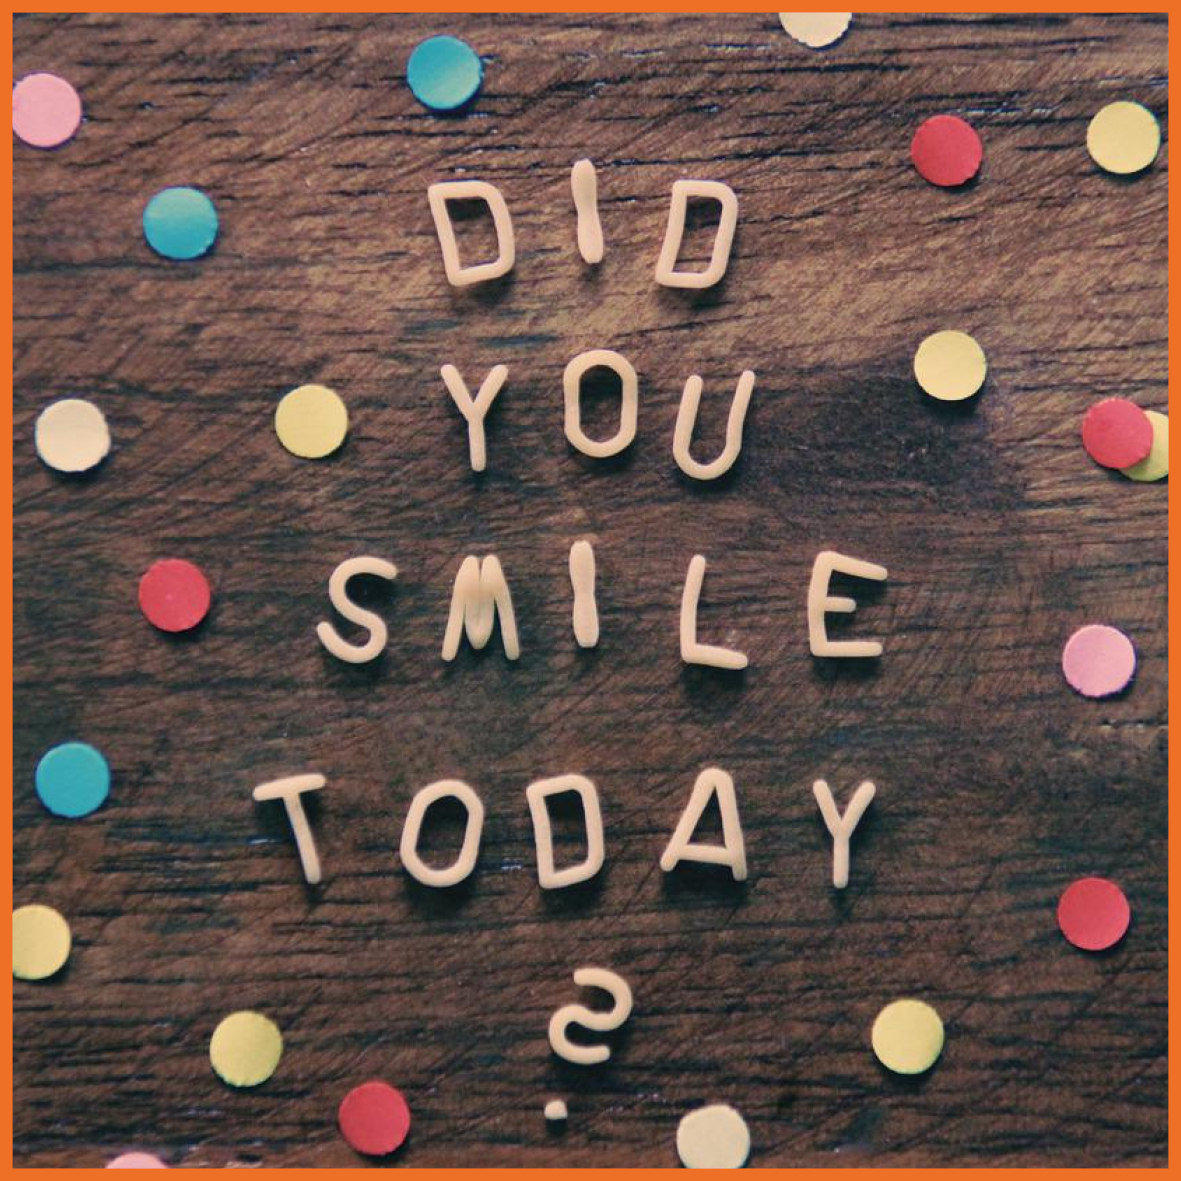 Billede af farvede prikker og tekst hvor der står "Did you smile today?".